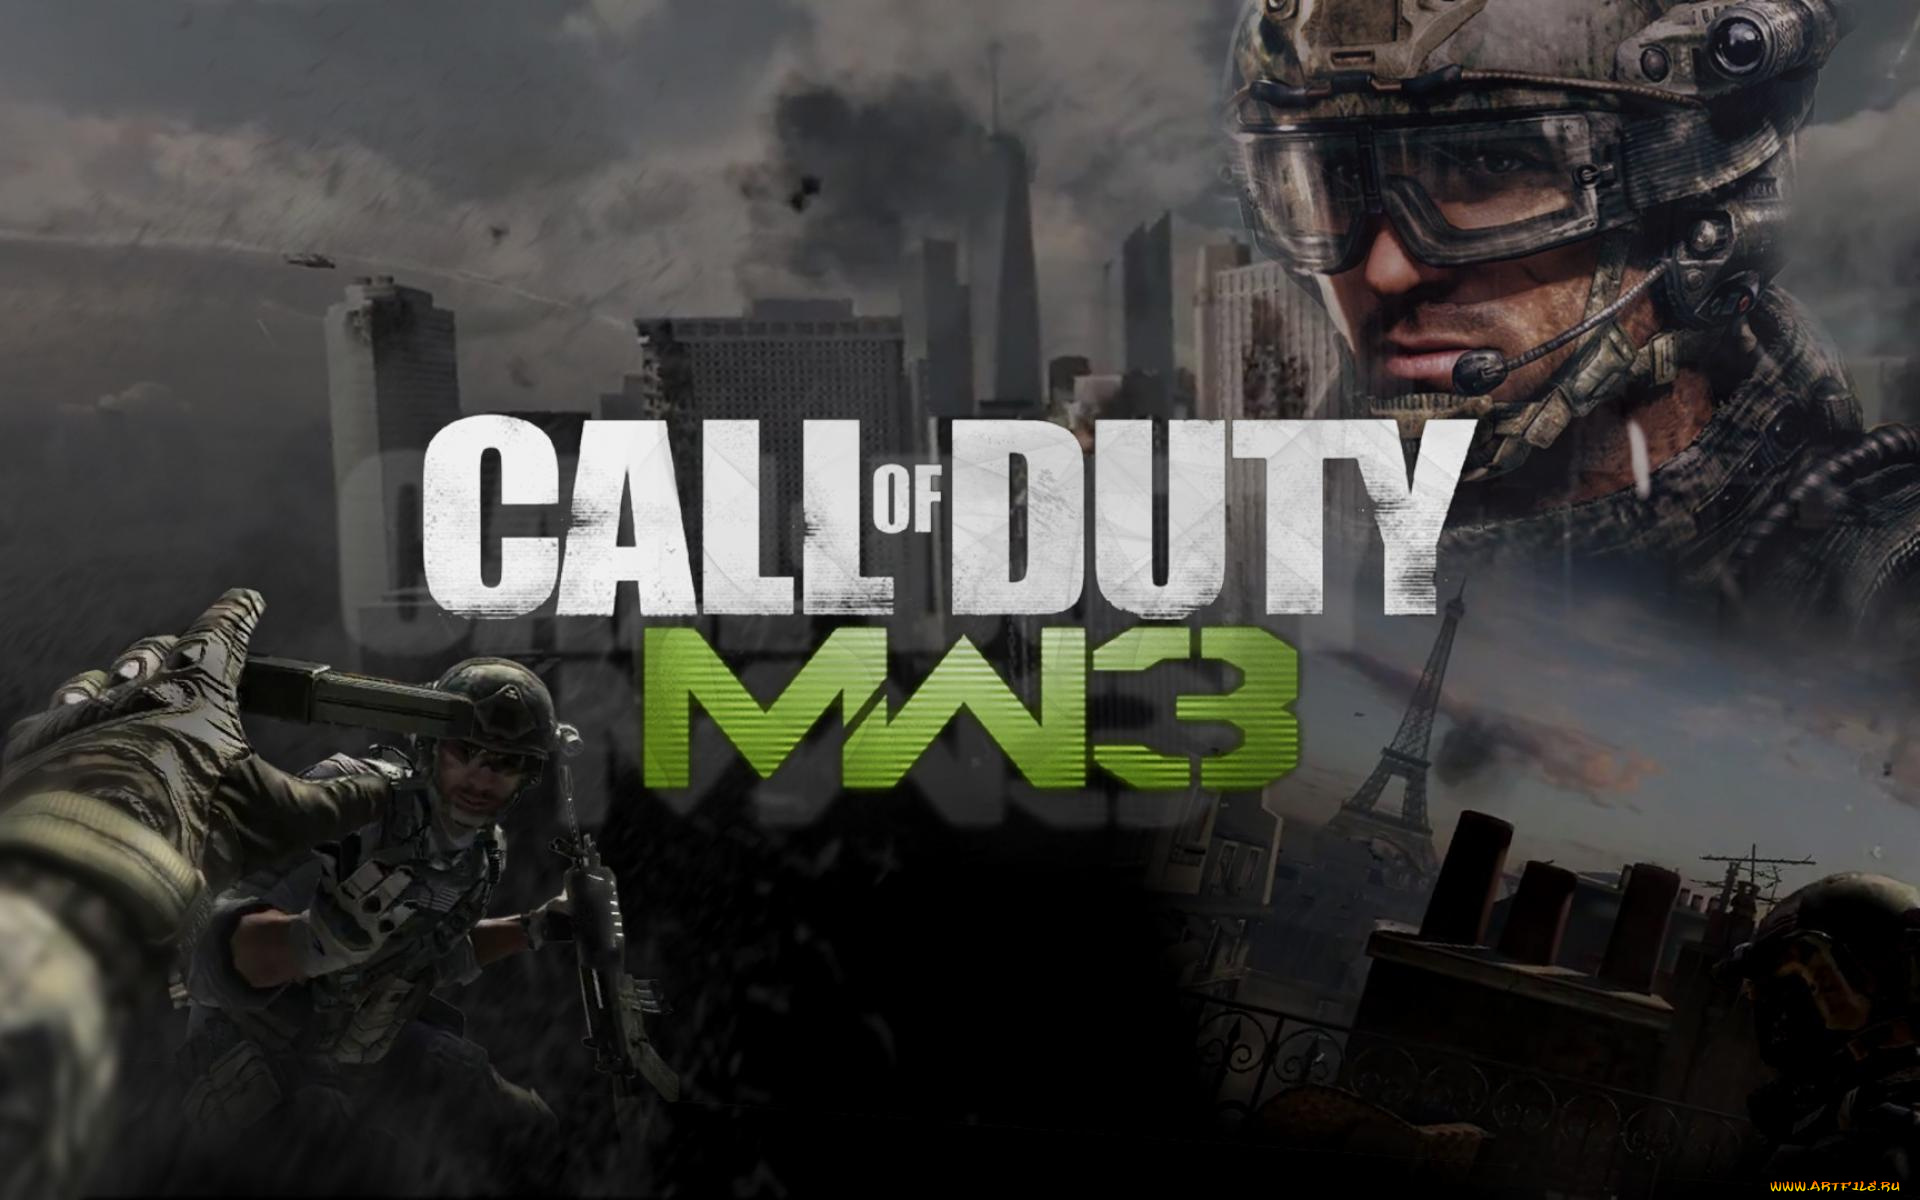 Кал оф дьюти плей маркет. Call of Duty мв3. Modern Warfare 3. Call of Duty mw3 обои. Call of Duty Modern варфаер 3.